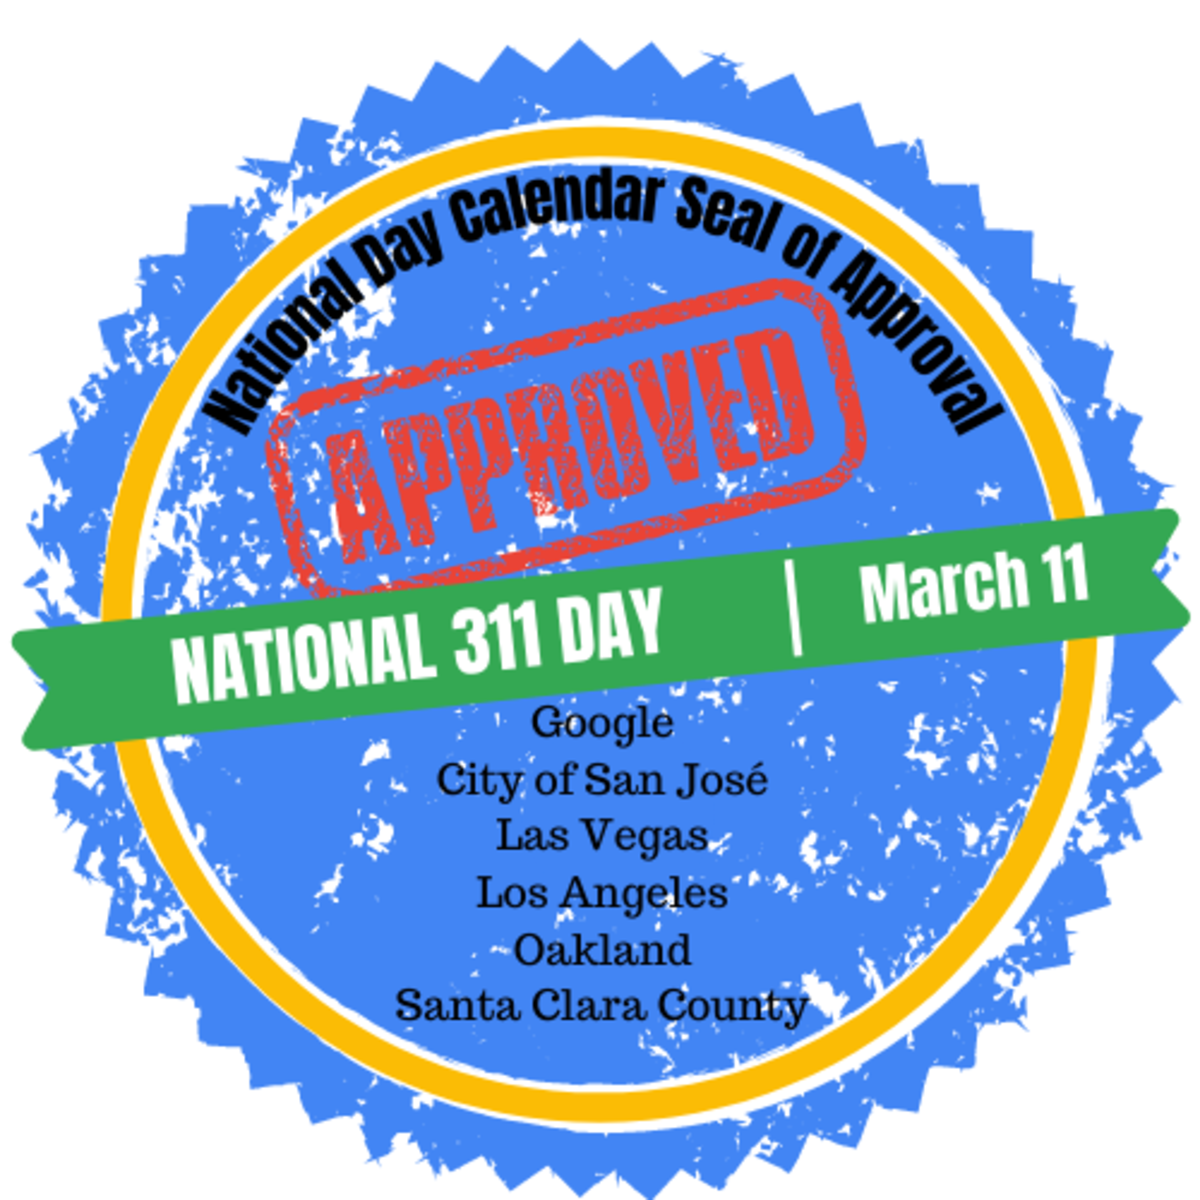 Google & San José National Day Calendar